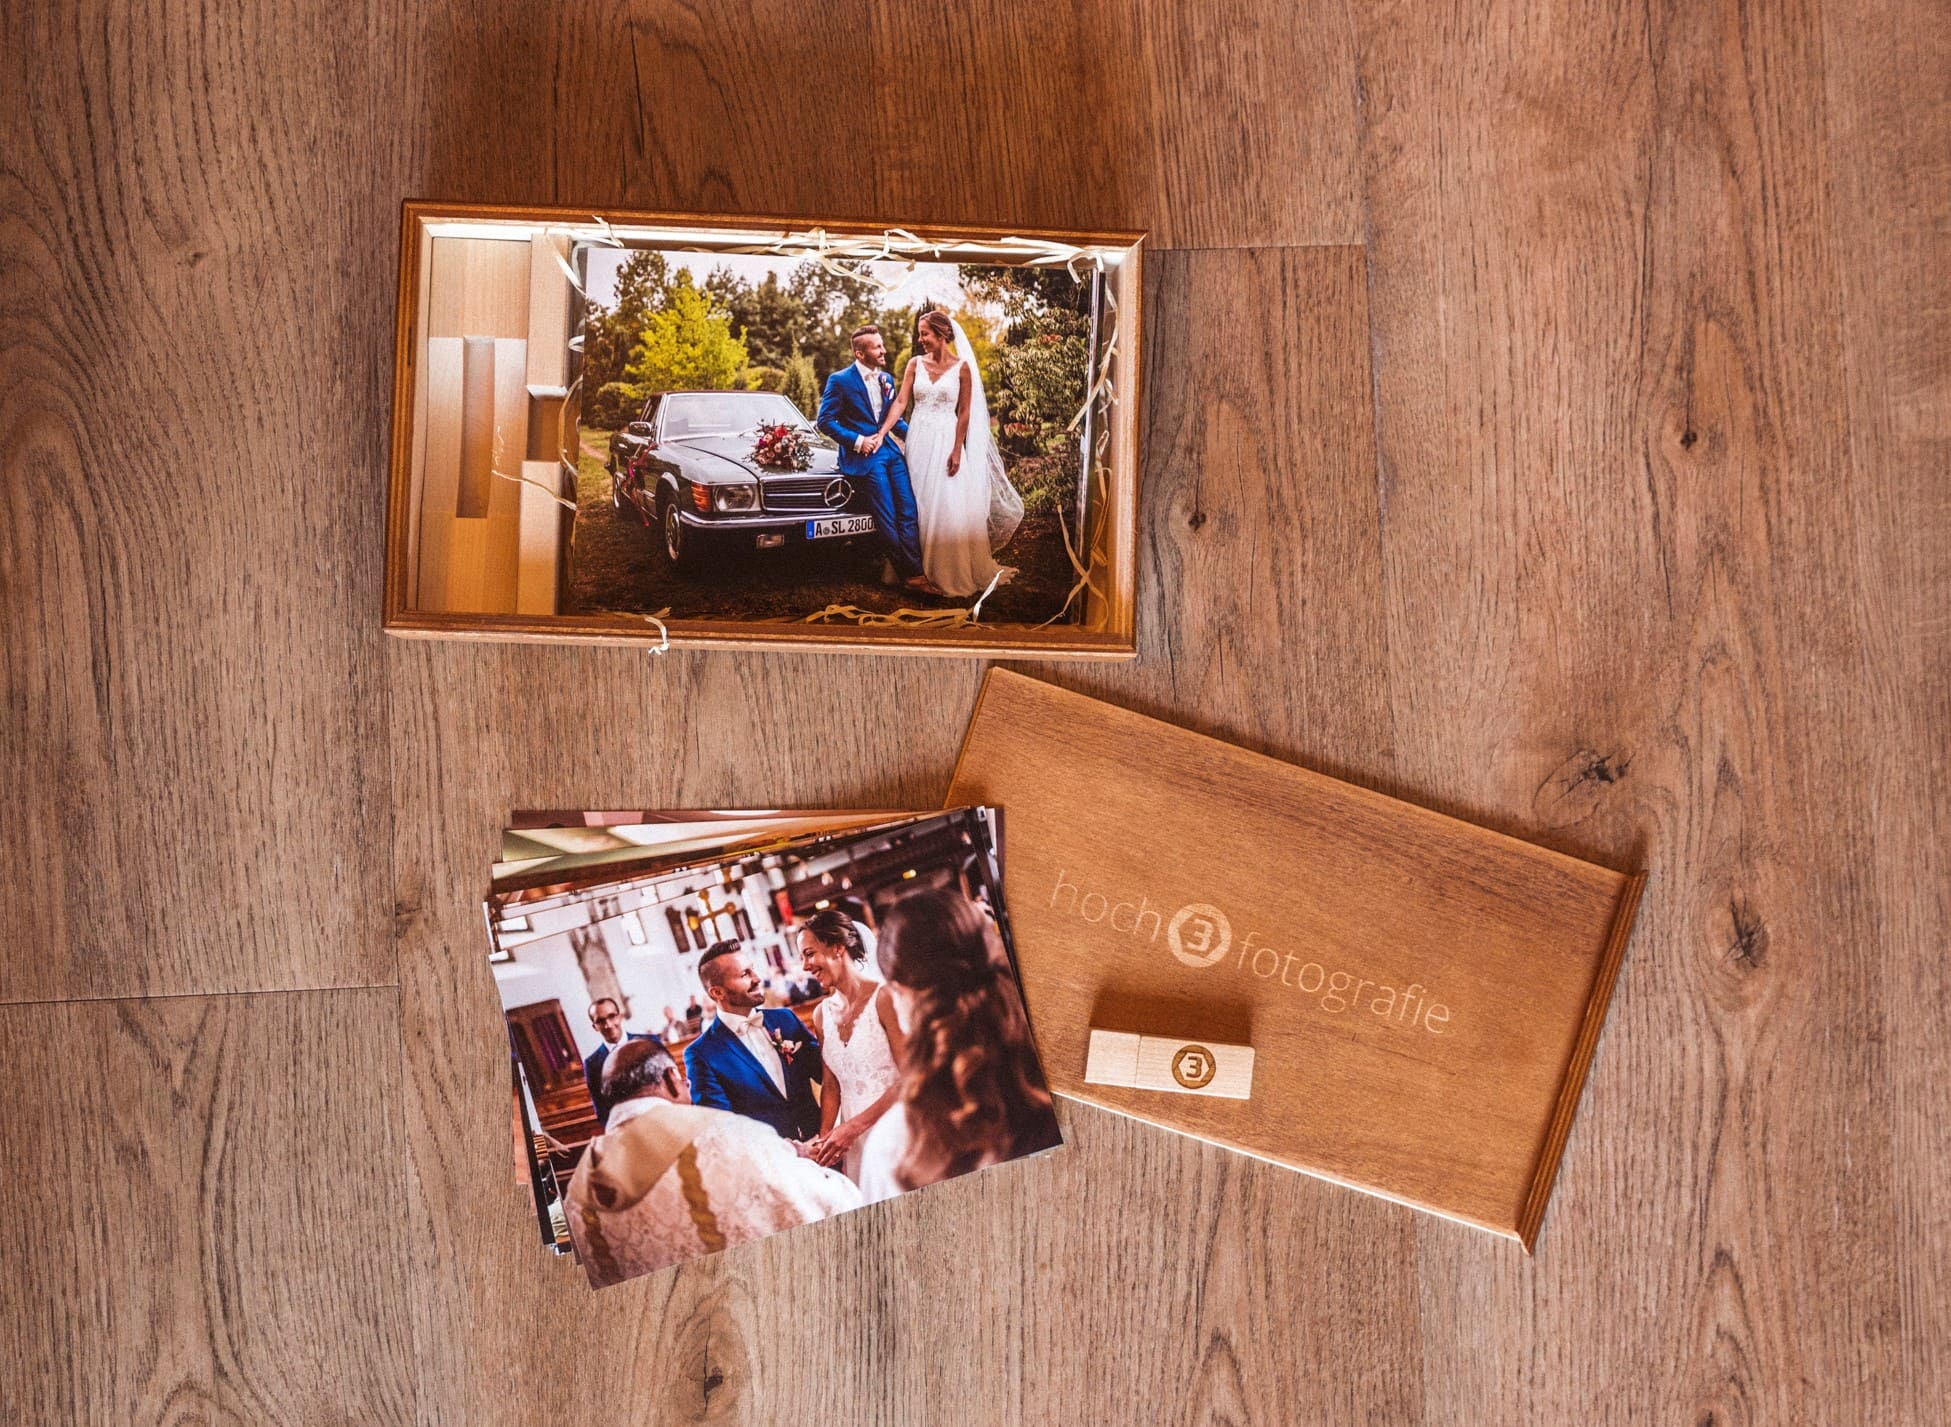 Eine Nahaufnahme der geöffneten hoch3fotografie Holzbox mit den Hochzeitsbildern und USB-Stick.